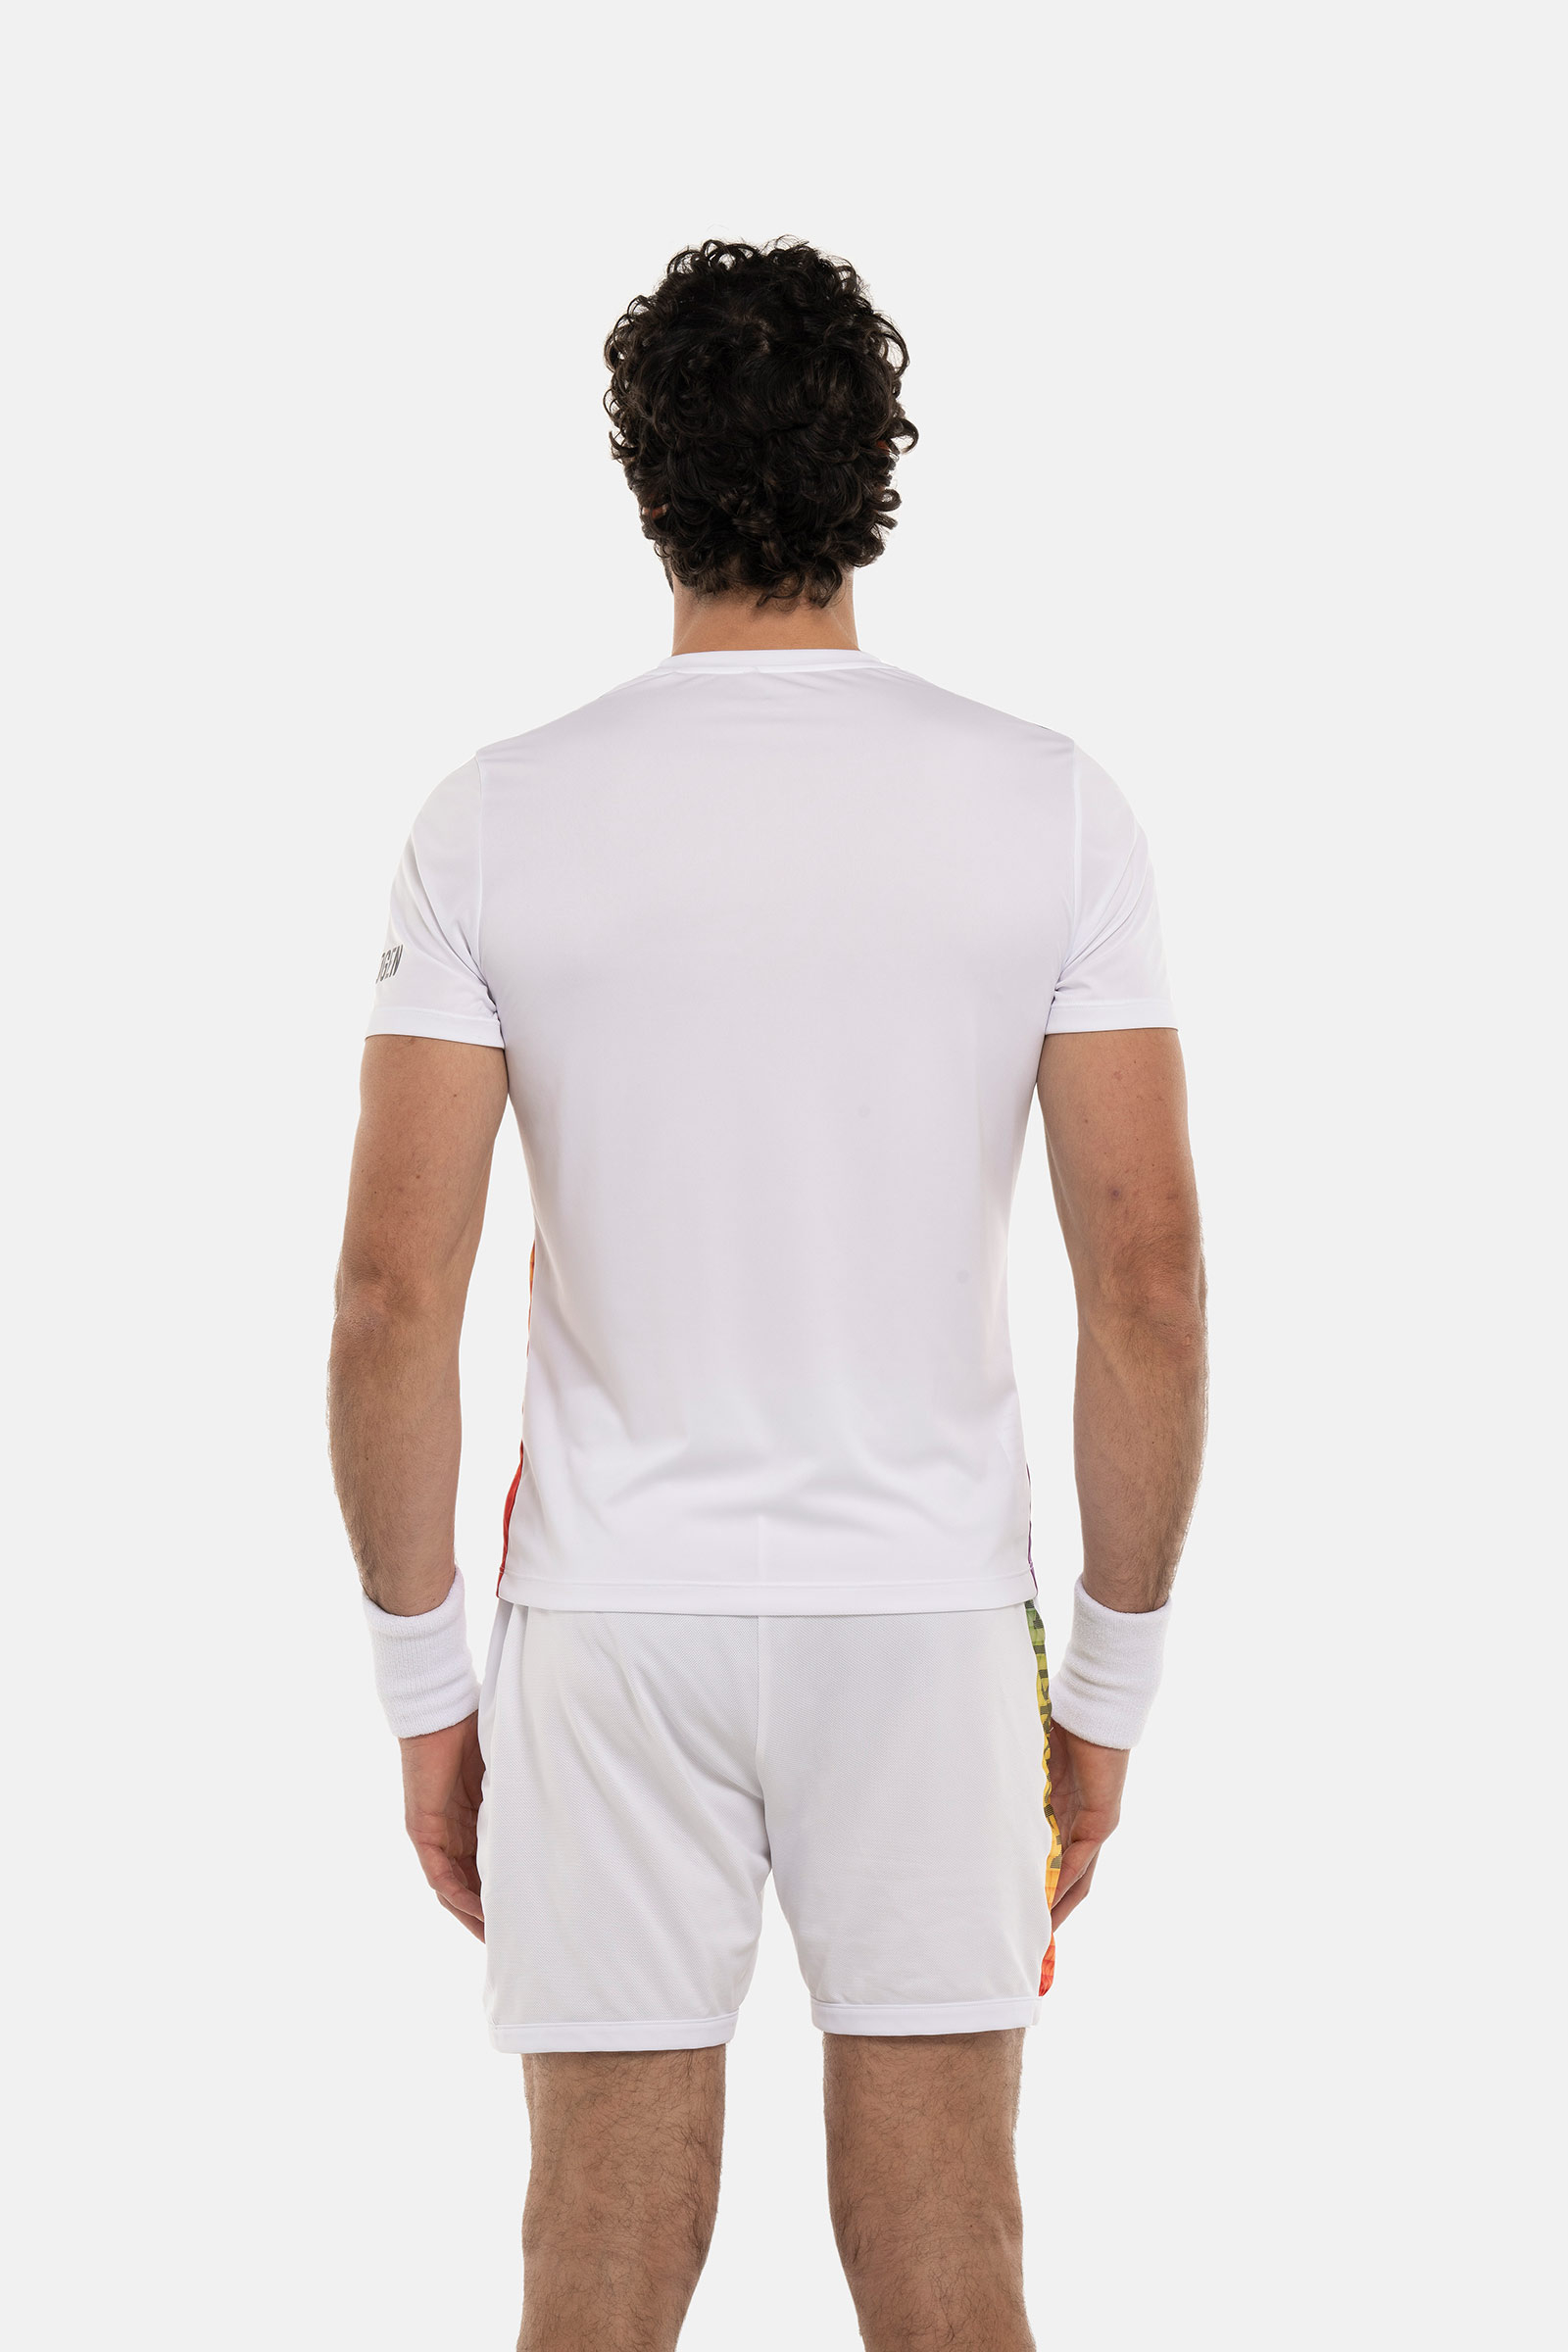 SPECTRUM TECH T-SHIRT - WHITE - Hydrogen - Luxury Sportwear